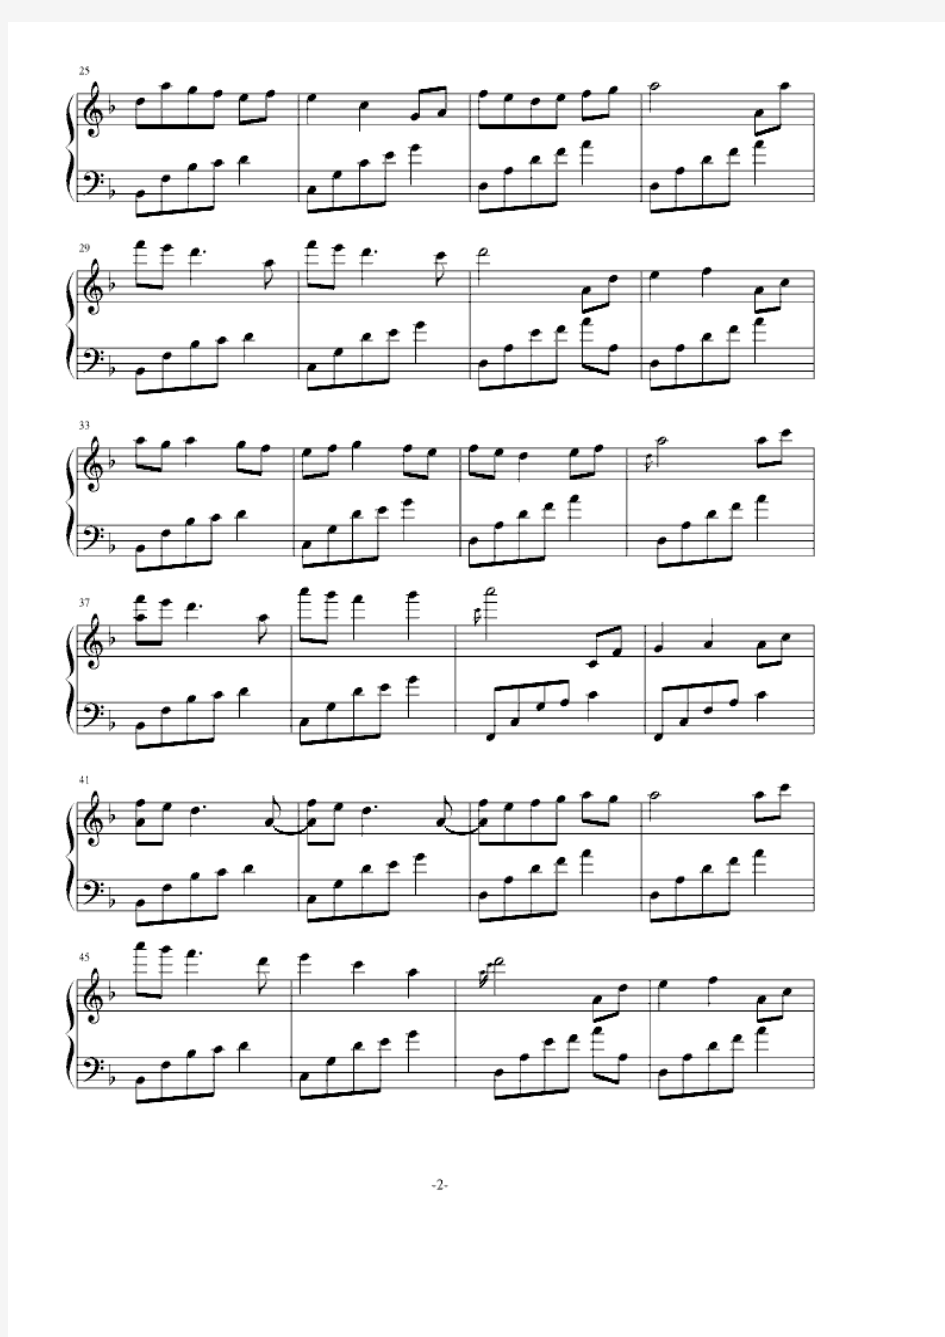 夜的钢琴曲十一 正谱 钢琴谱 五线谱 乐谱.pdf